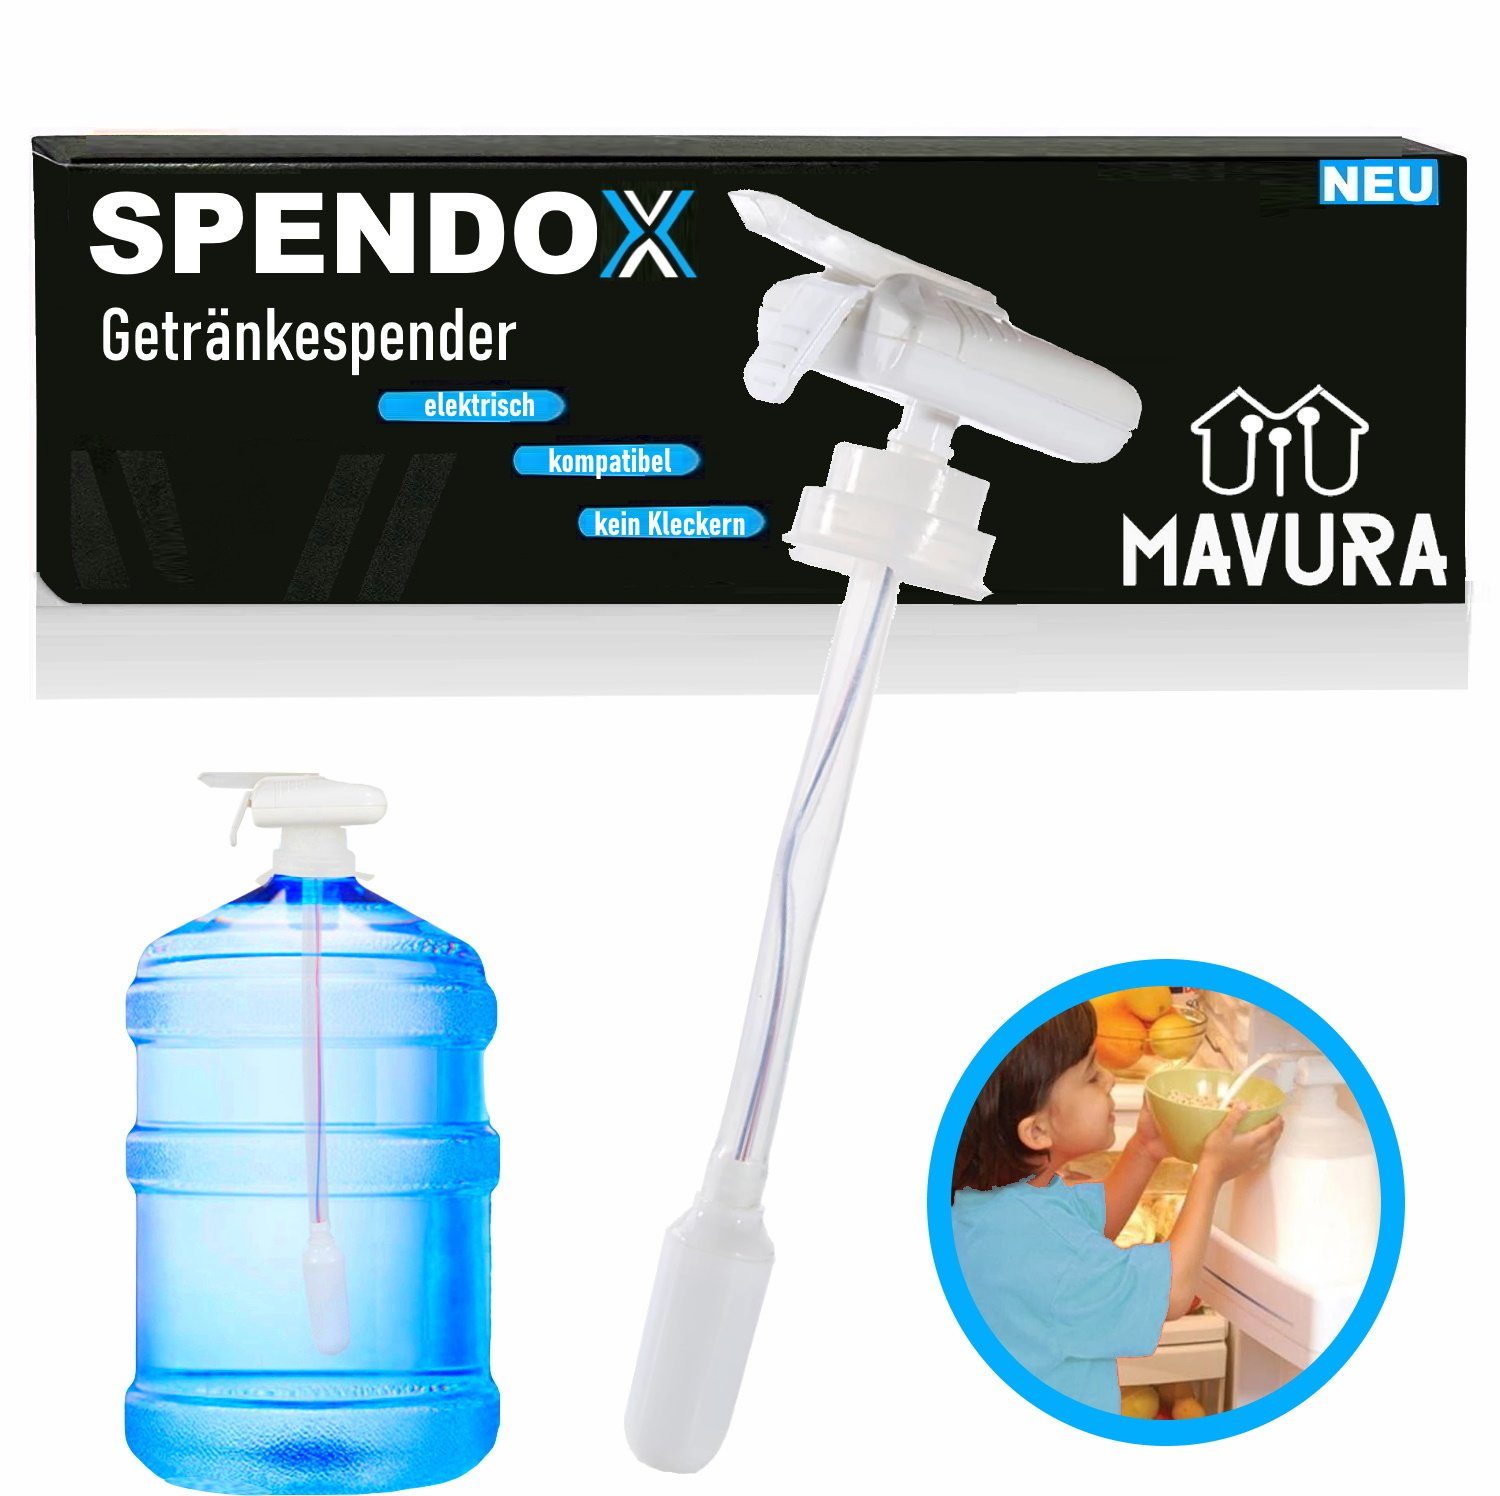 MAVURA Getränkespender SPENDOX Trinkwasserpumpe elektrische